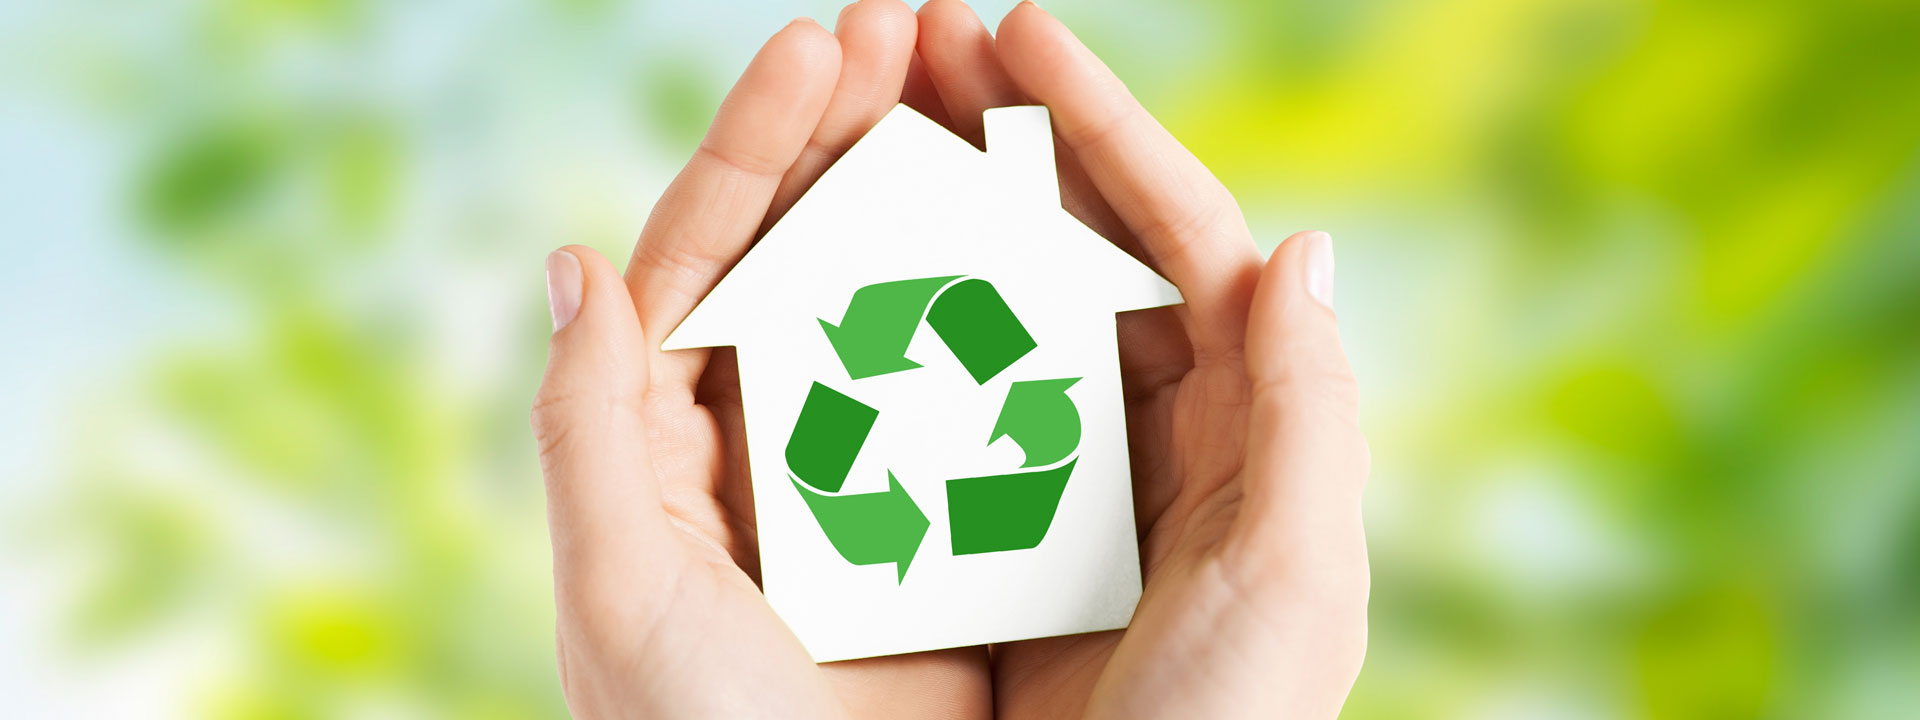 Reducir, reutilizar y reciclar